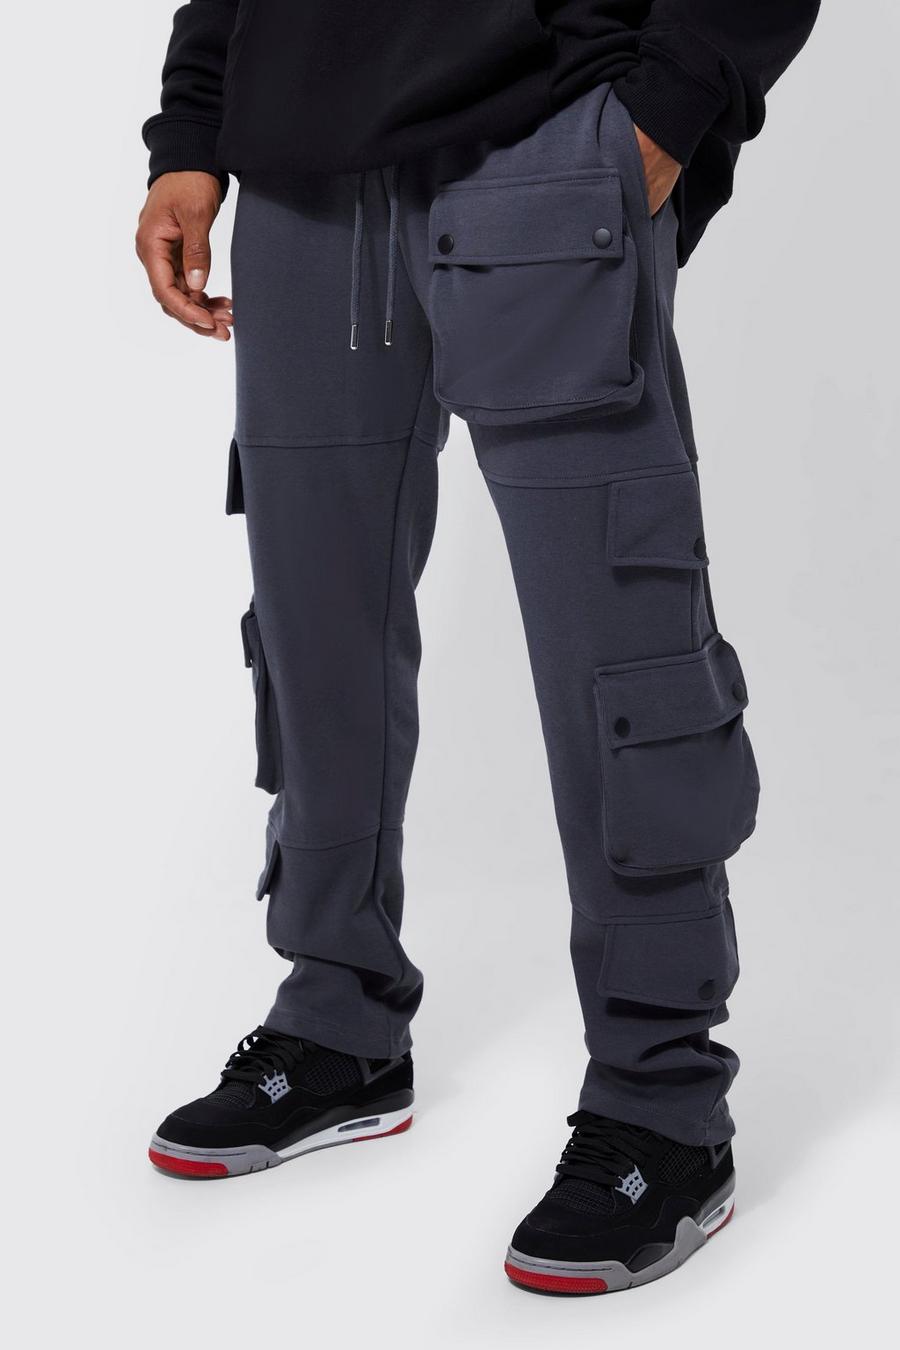 Pantalón deportivo Regular con multibolsillos cargo, Charcoal gris